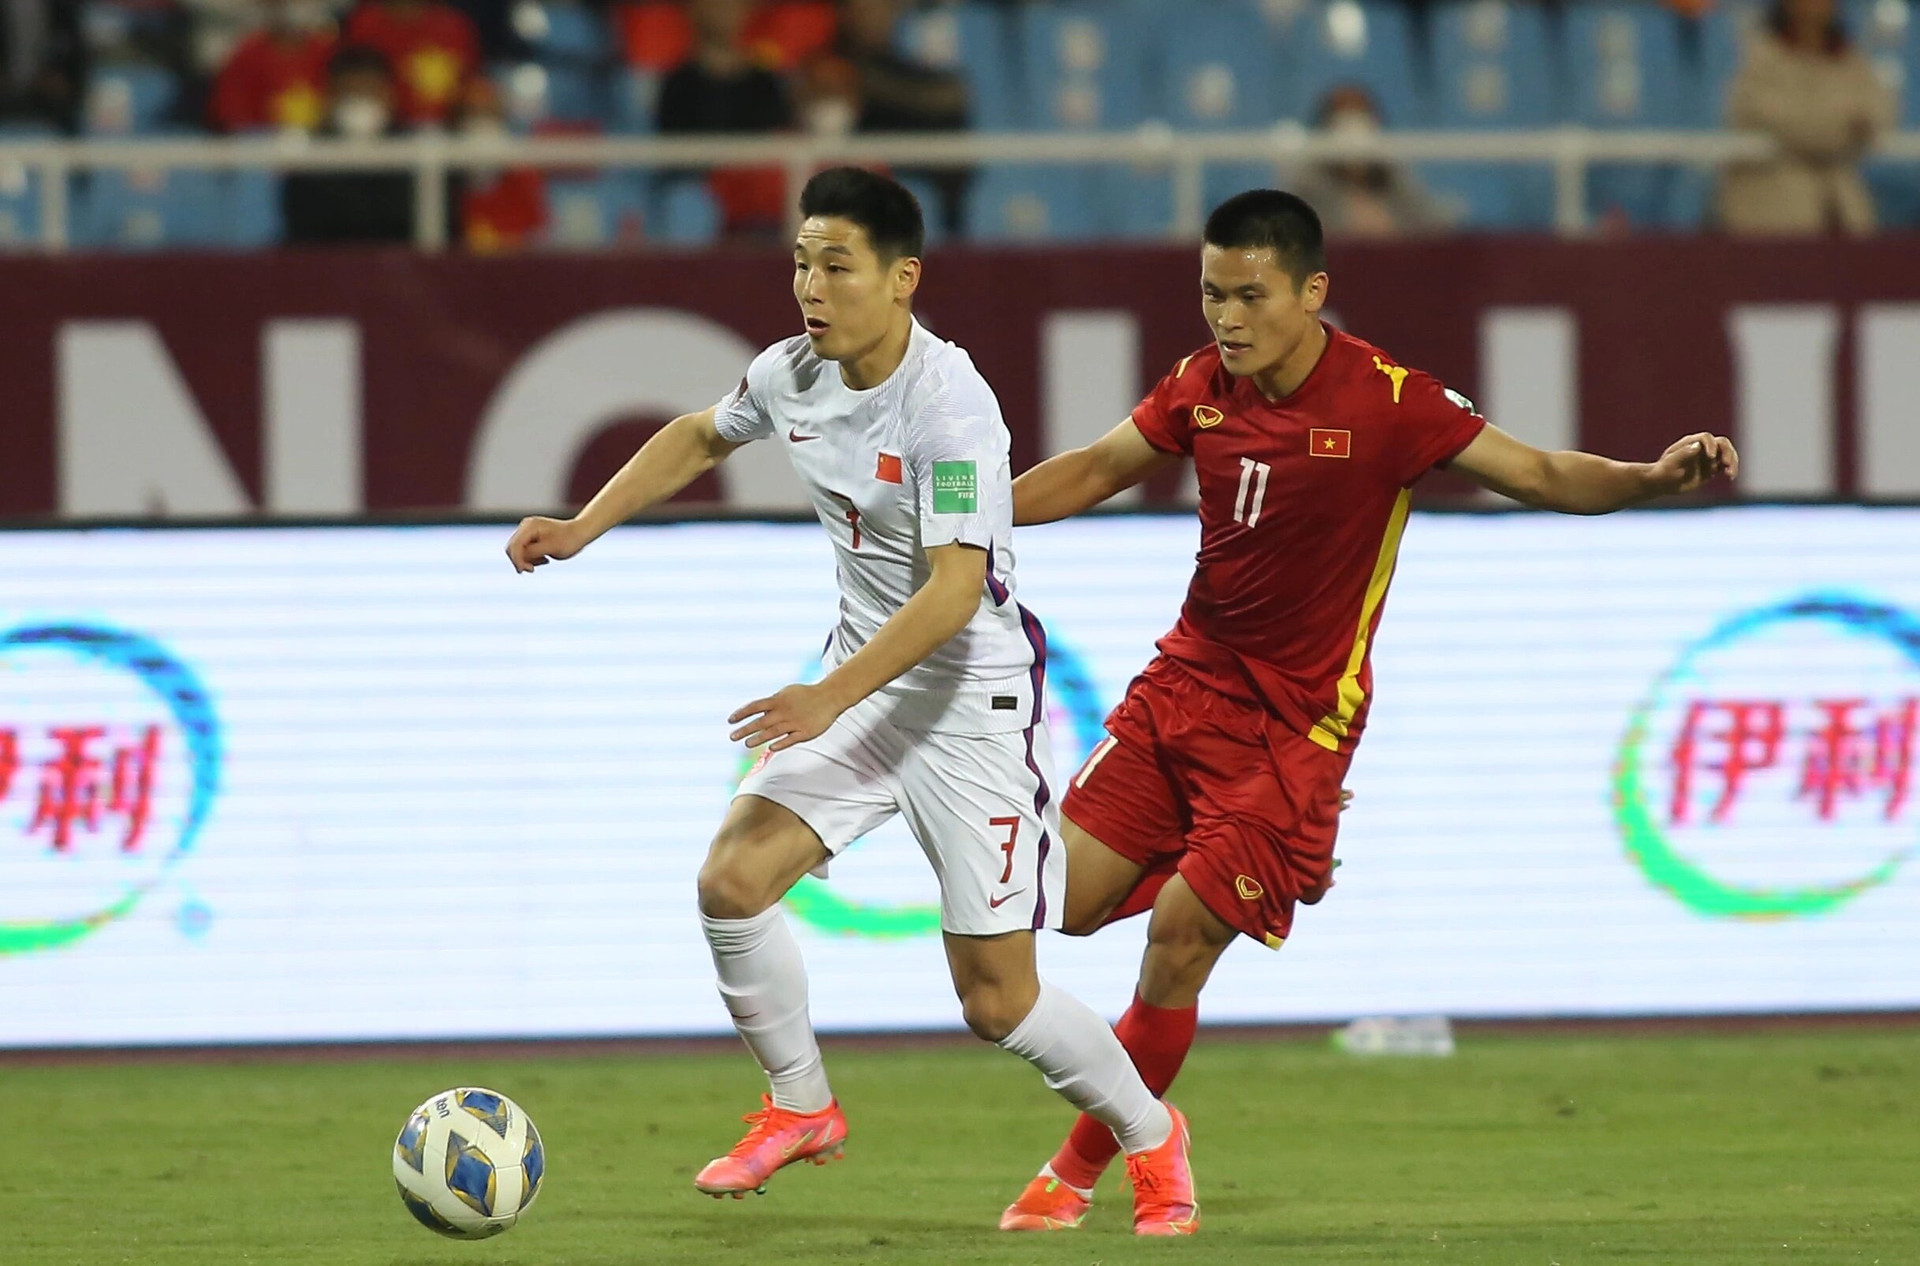 Báo Trung Quốc: 'Trận thua tuyển Việt Nam 1-3 bị điều tra, có dấu hiệu bán độ' - 1